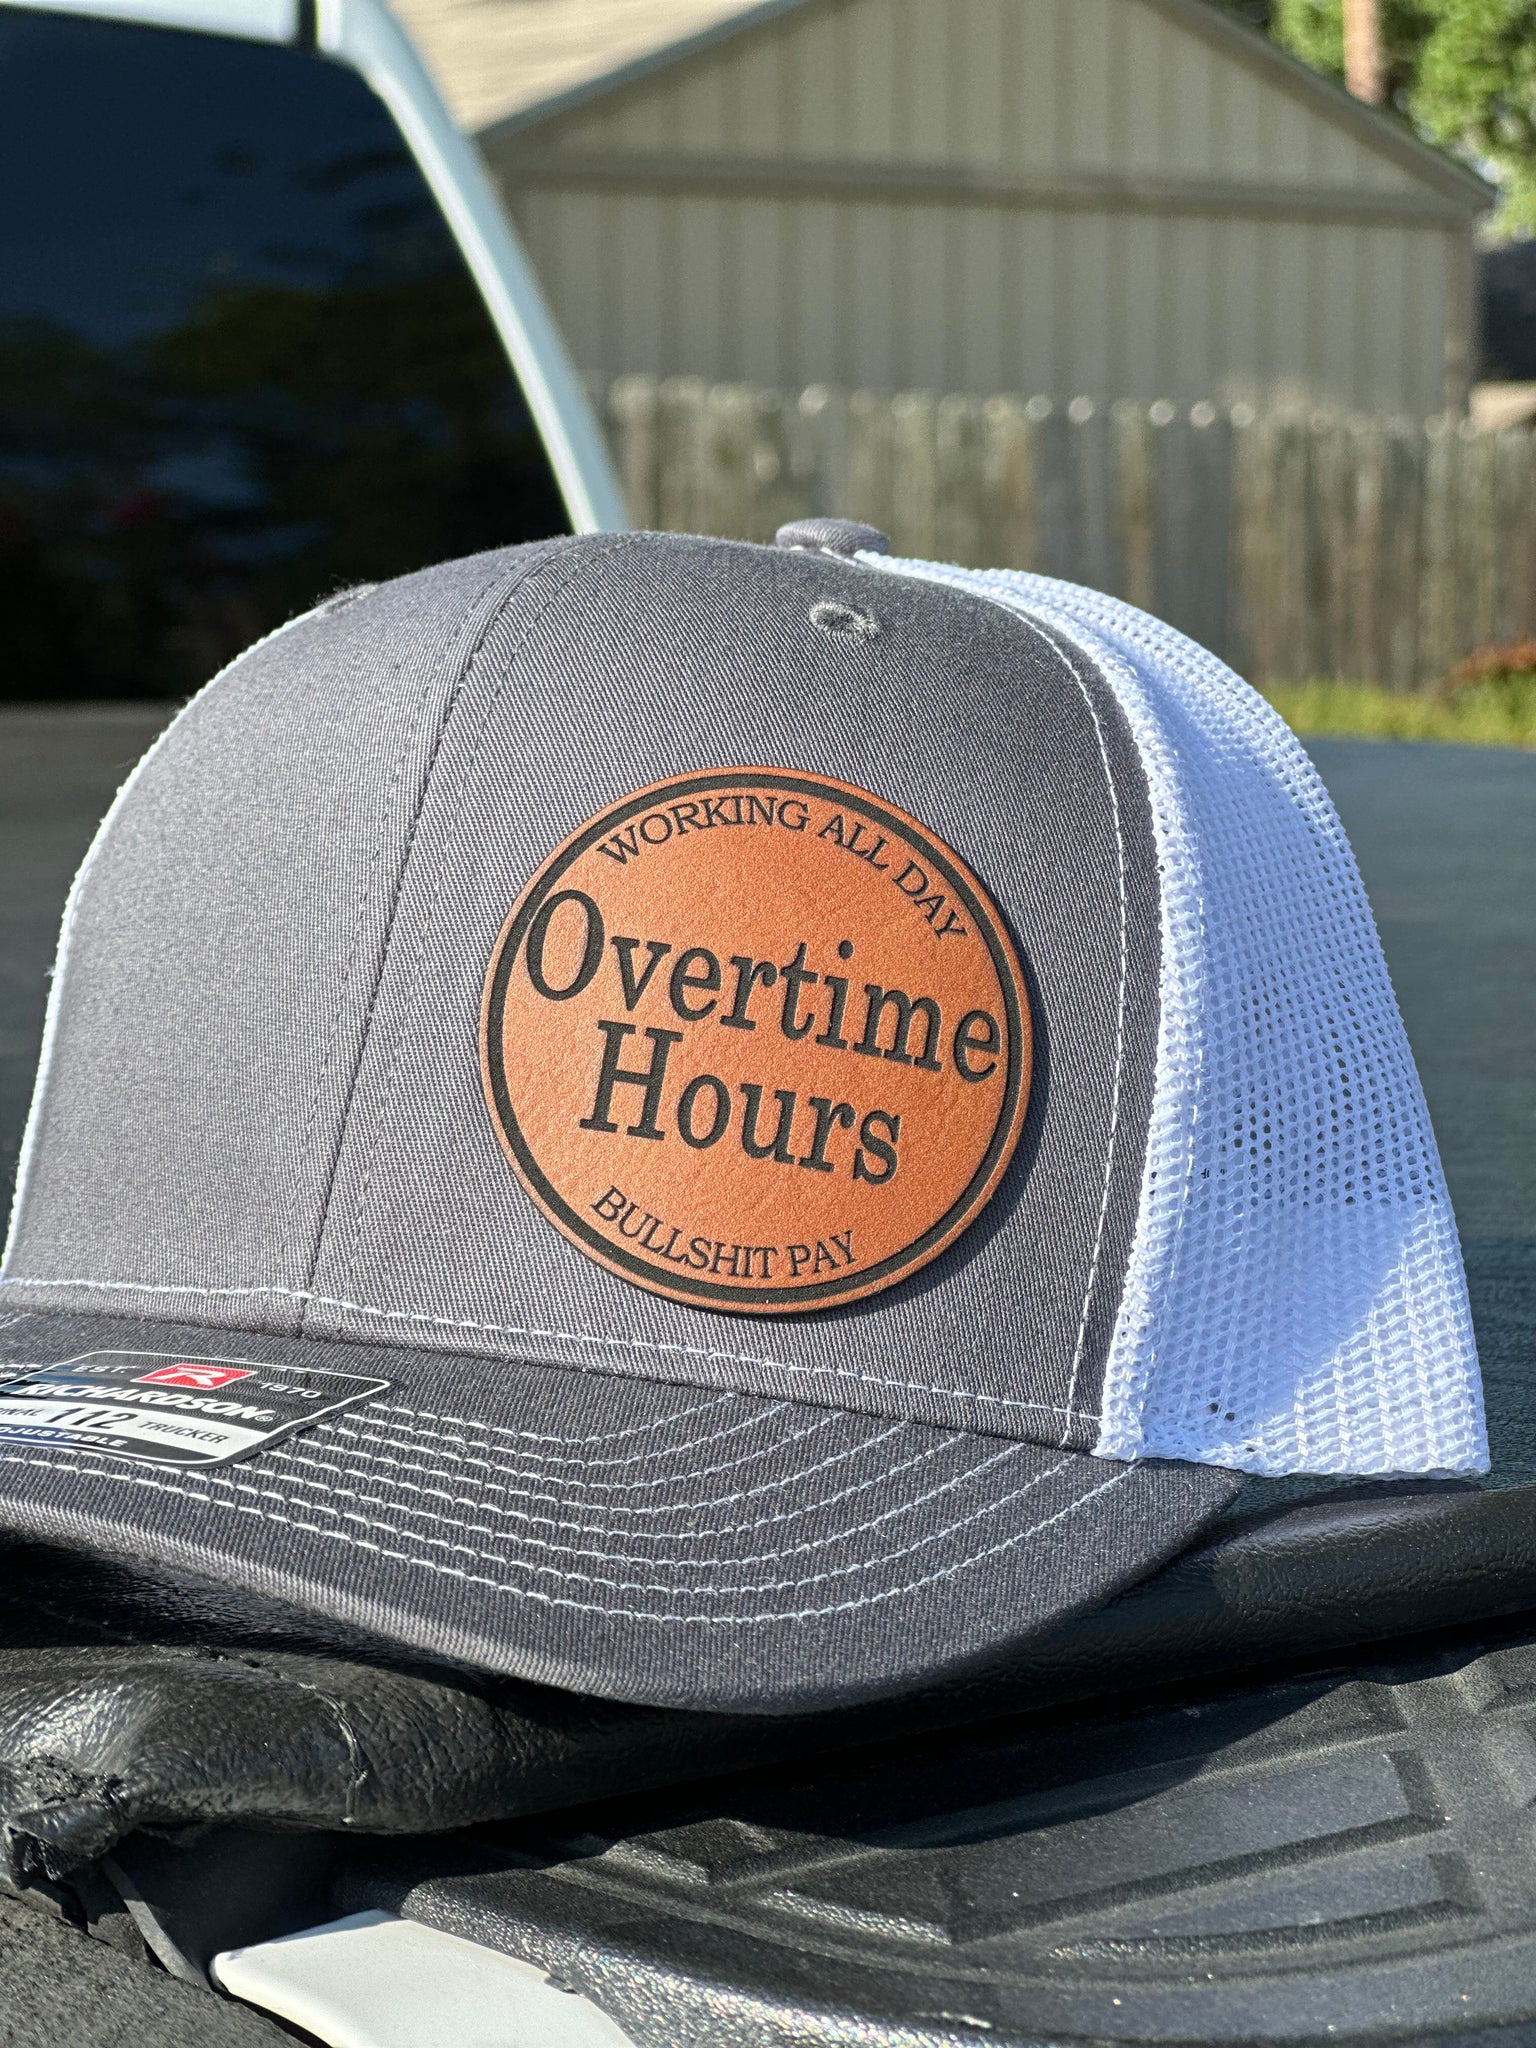 Overtime hours/ Bullshit pay